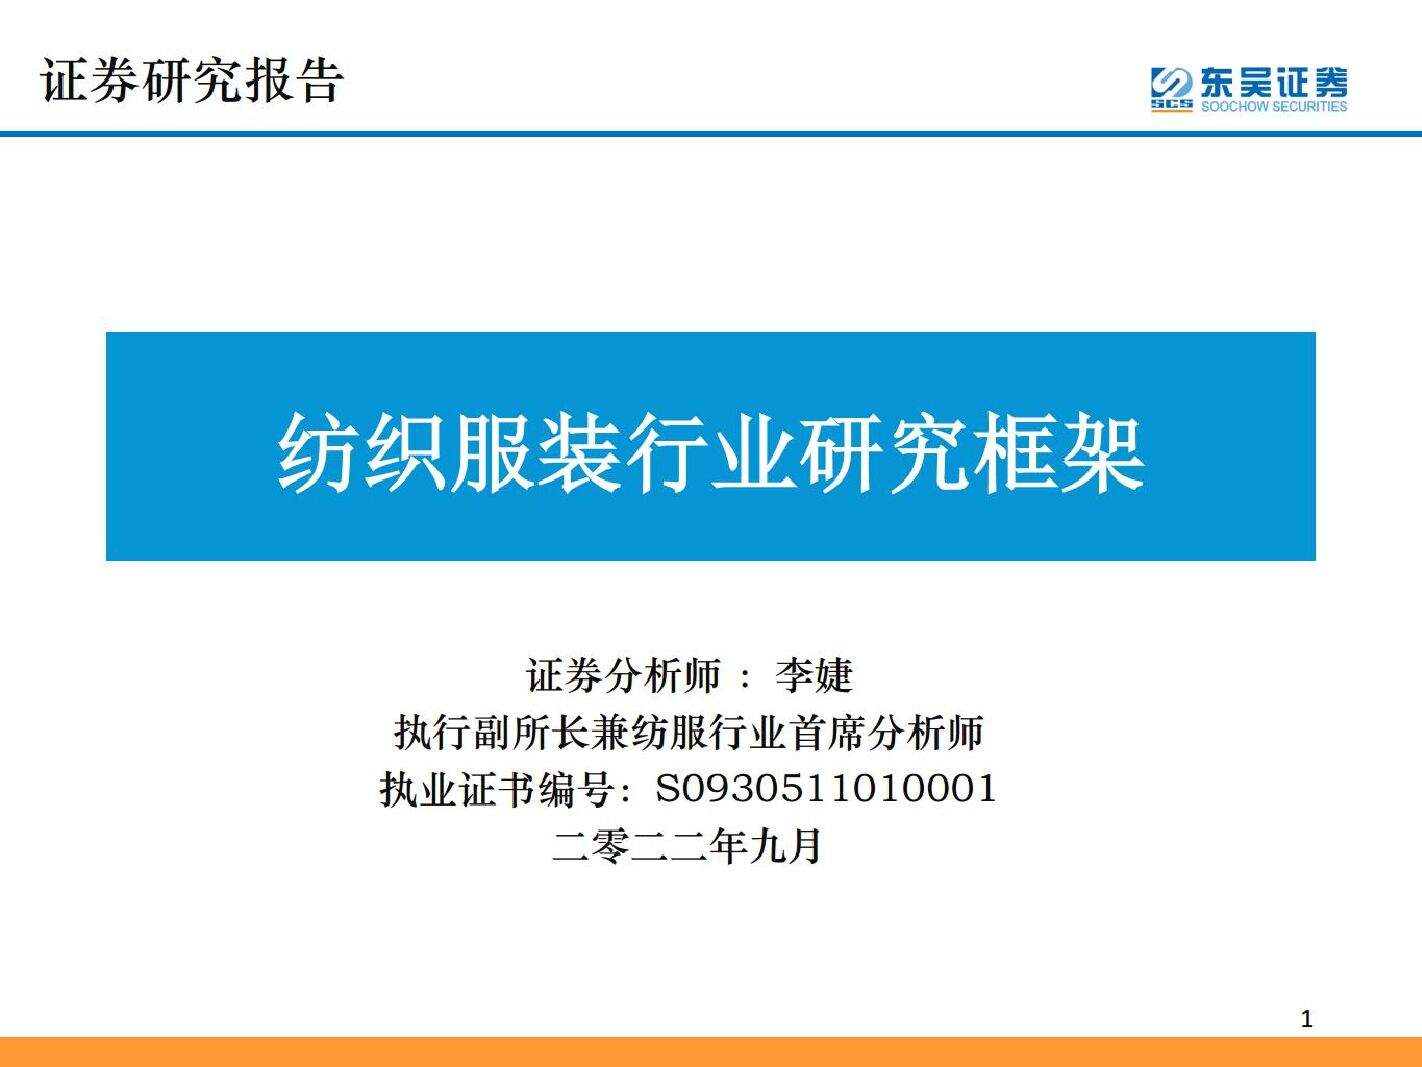 纺织服装行业研究框架 东吴证券 2022-09-07 附下载